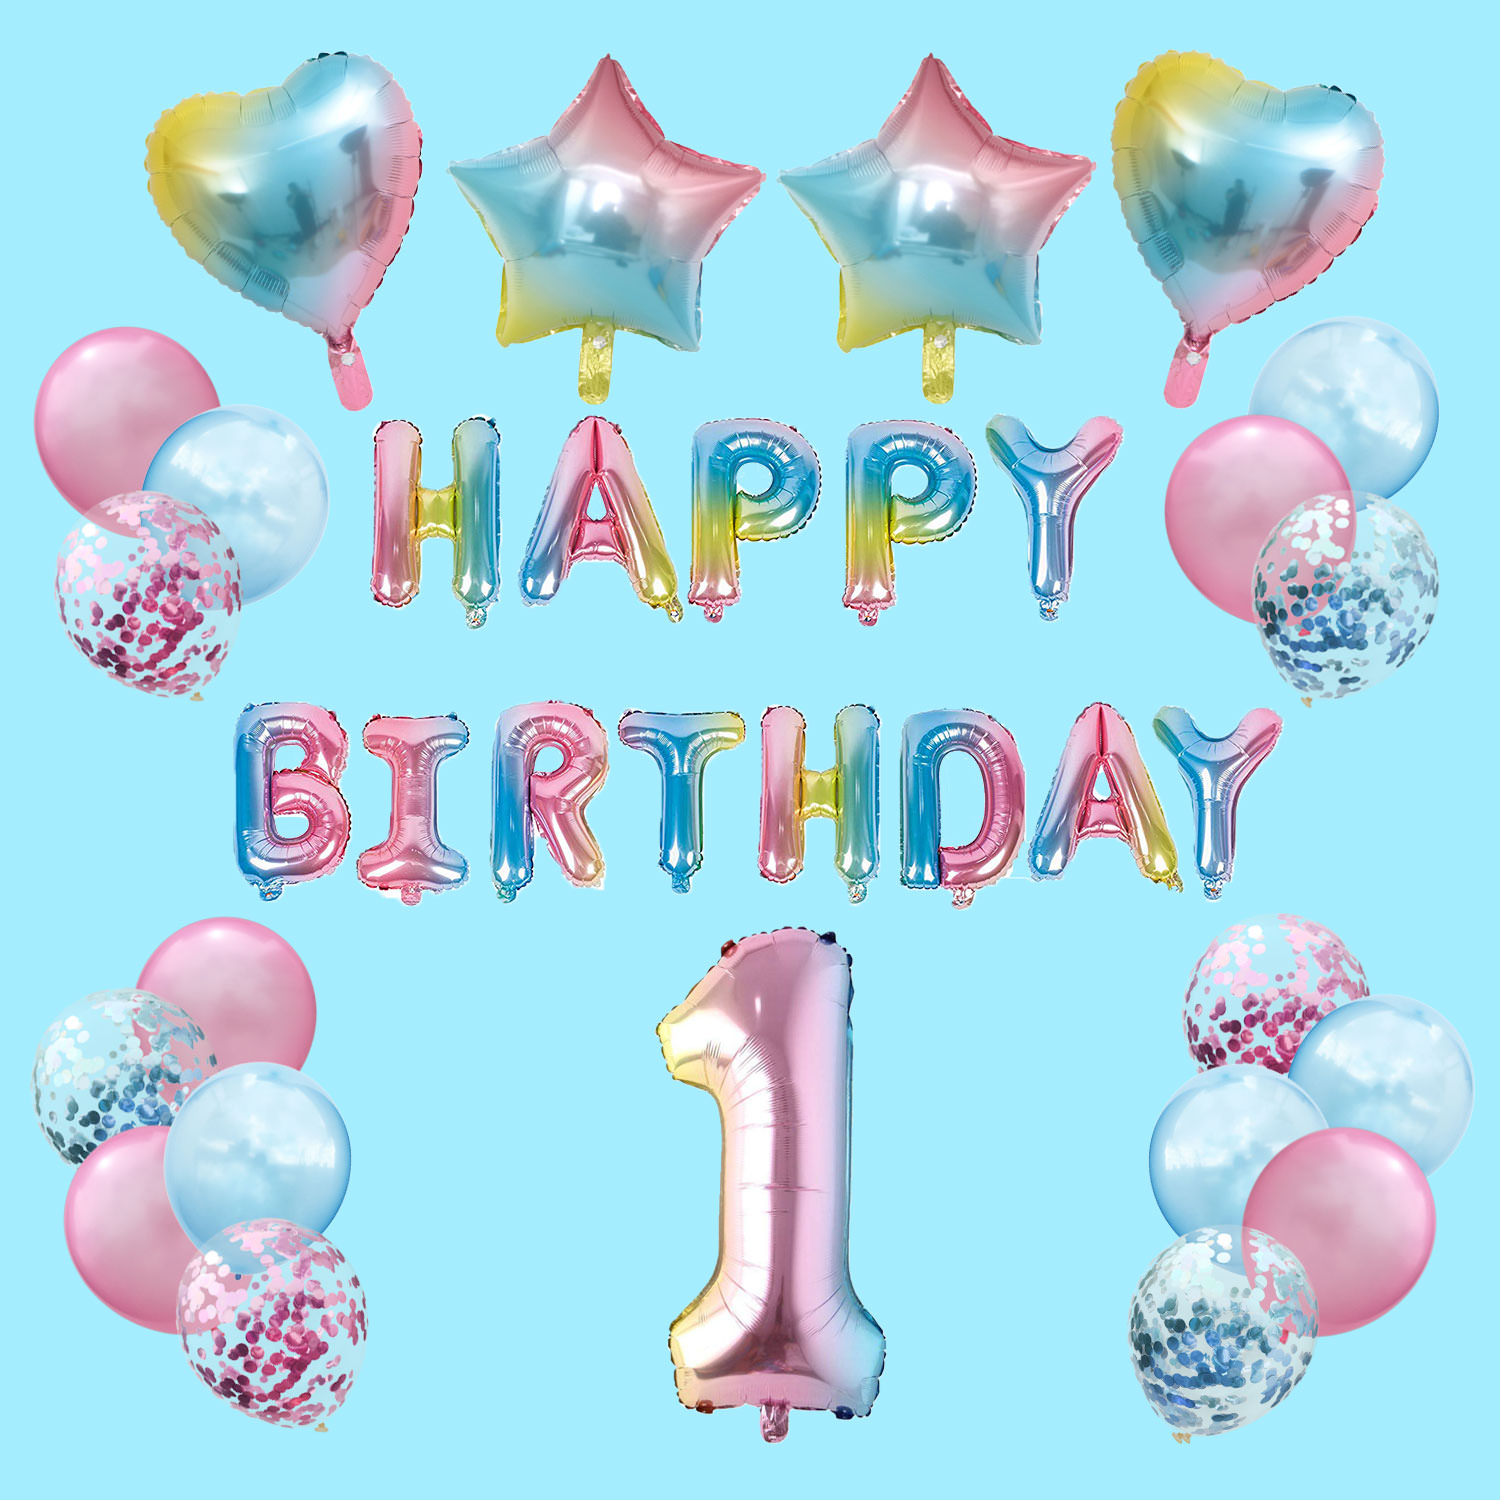 Oblique Unique® Folien Luftballon mit Zahl Nummer für Kinder Geburtstag Jubiläum Silvester Party Deko Folienballon in Regenbogenfarben Farbmix Zahl wählbar Nr 0